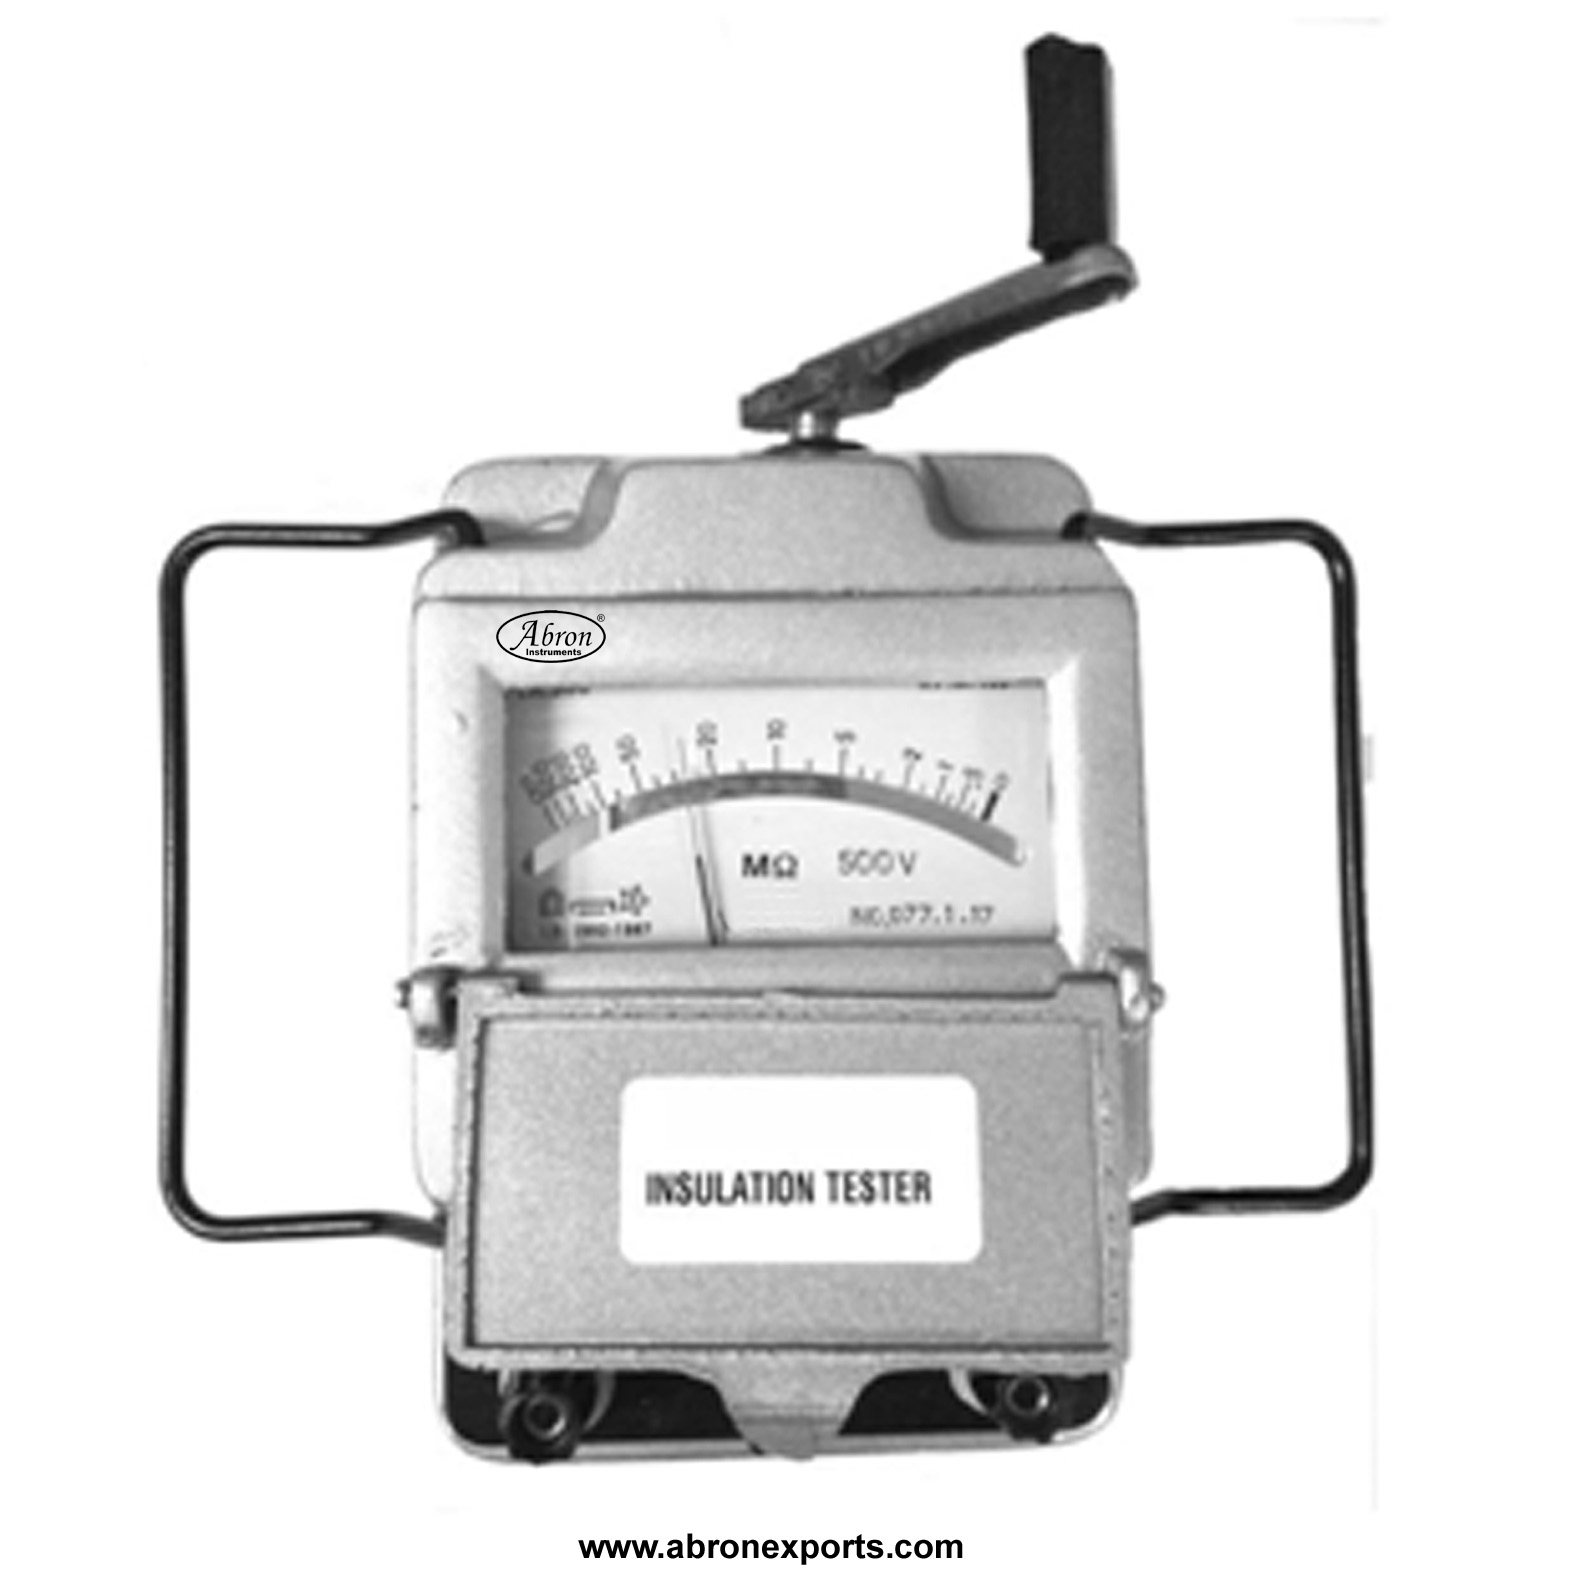 Insulation Tester ( Megger) Hand Driven dial 200Meg Ohms 500V  AE-1318H2	